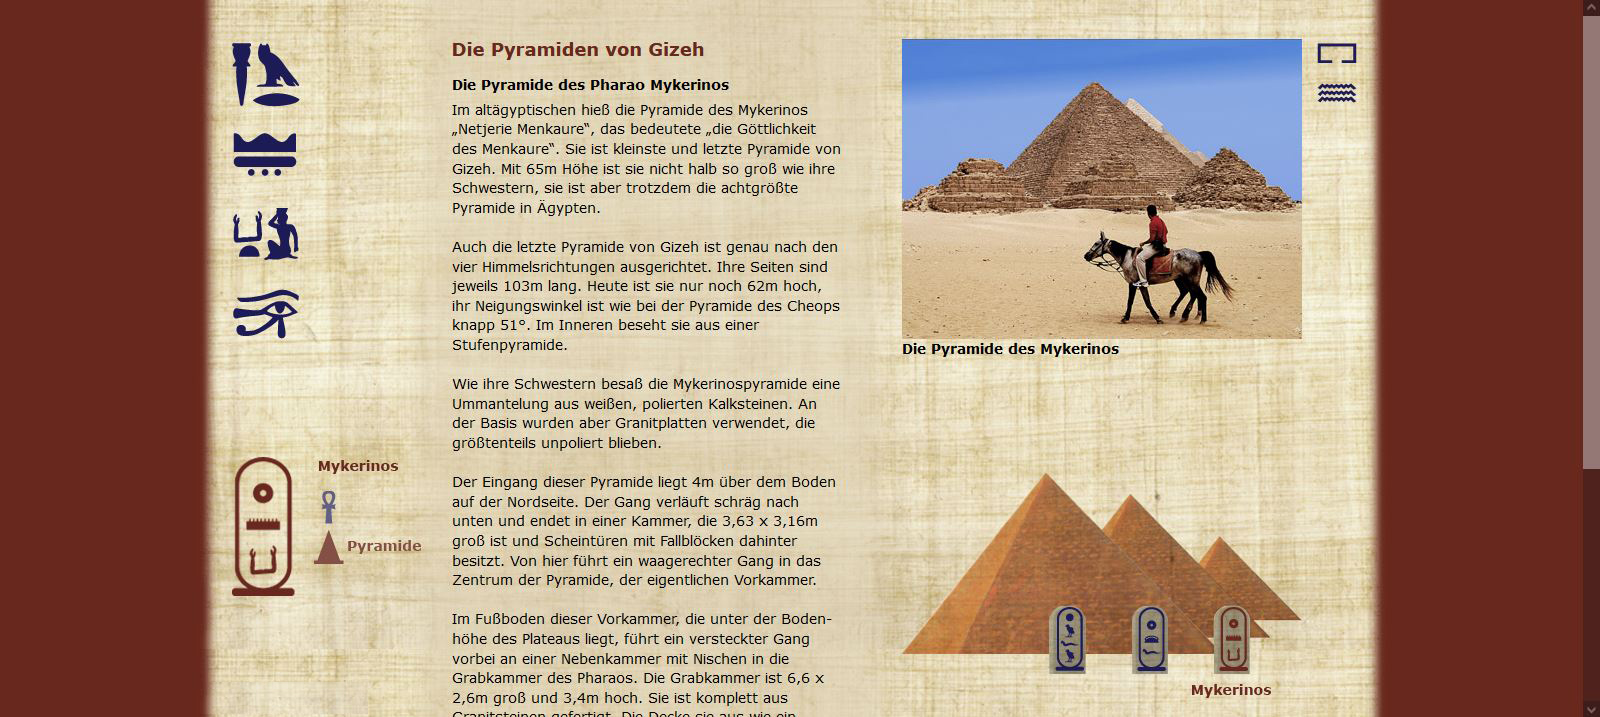 Die Pyramiden von Gizeh - Mykerinos - Pyramide